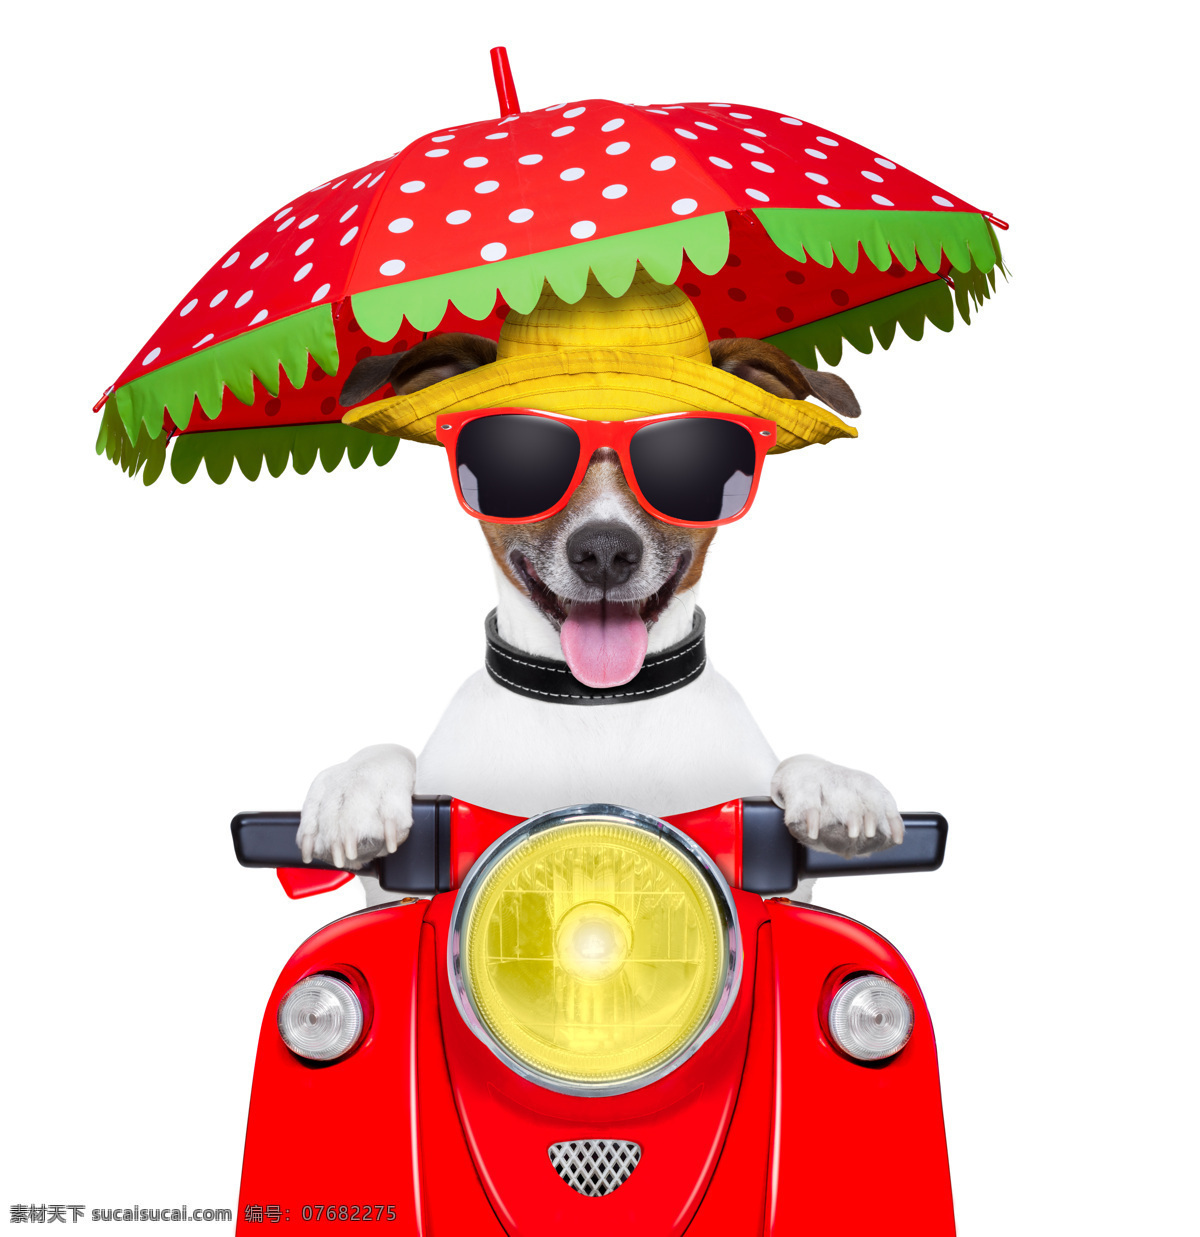 骑摩托的小狗 骑摩托 摩托车 创意摄影 广告摄影 广告大片 可爱宠物 小狗 狗狗 宠物狗 宠物摄影 家禽家畜 生物世界